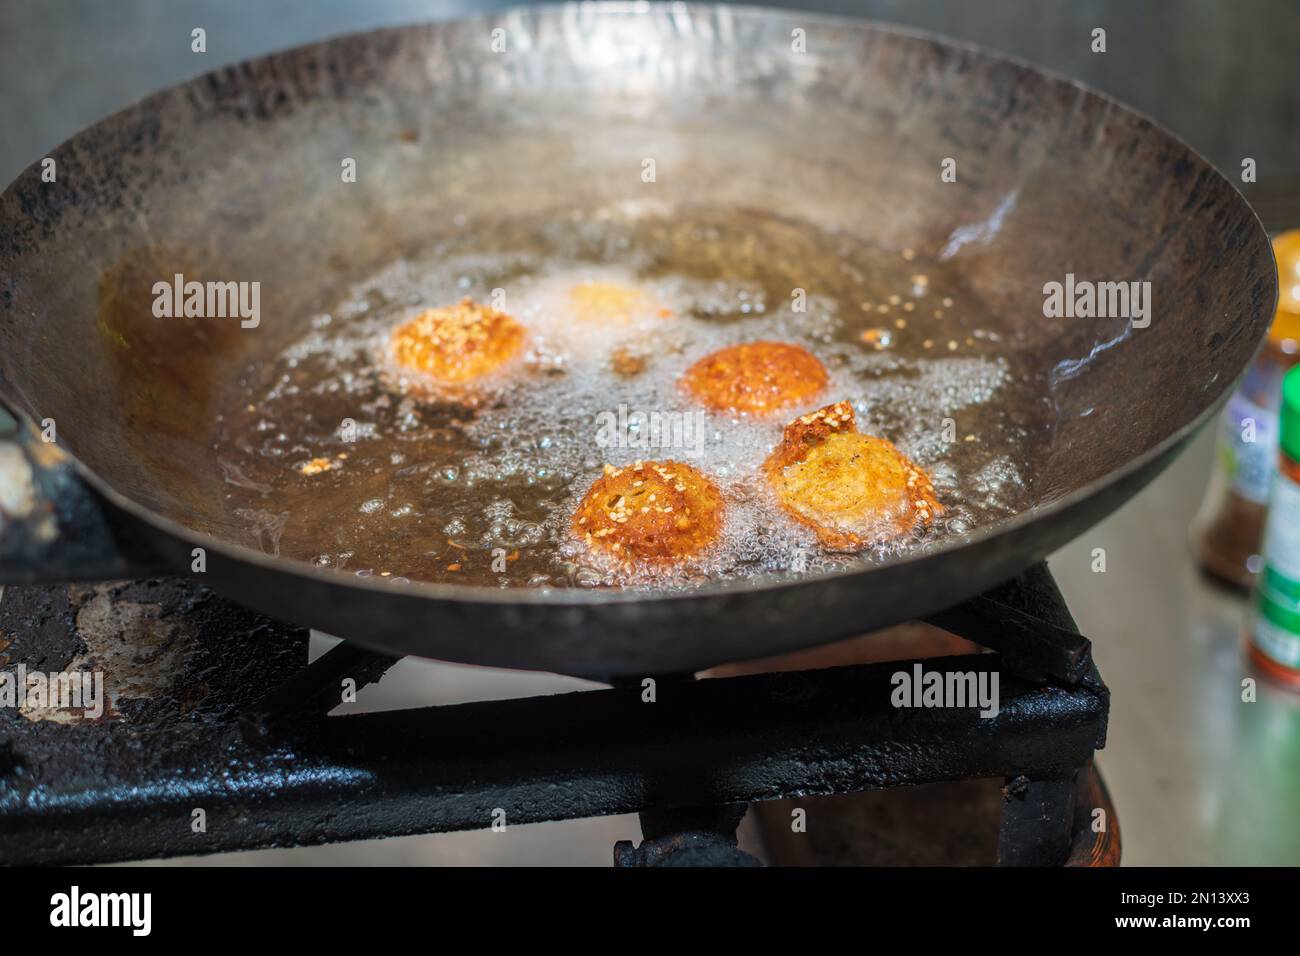 Des boulettes de falafel à friture profonde dans un wok, des huiles de cuisson chaudes bouillant, et des boulettes de falafel ont tourné une couleur dorée Banque D'Images